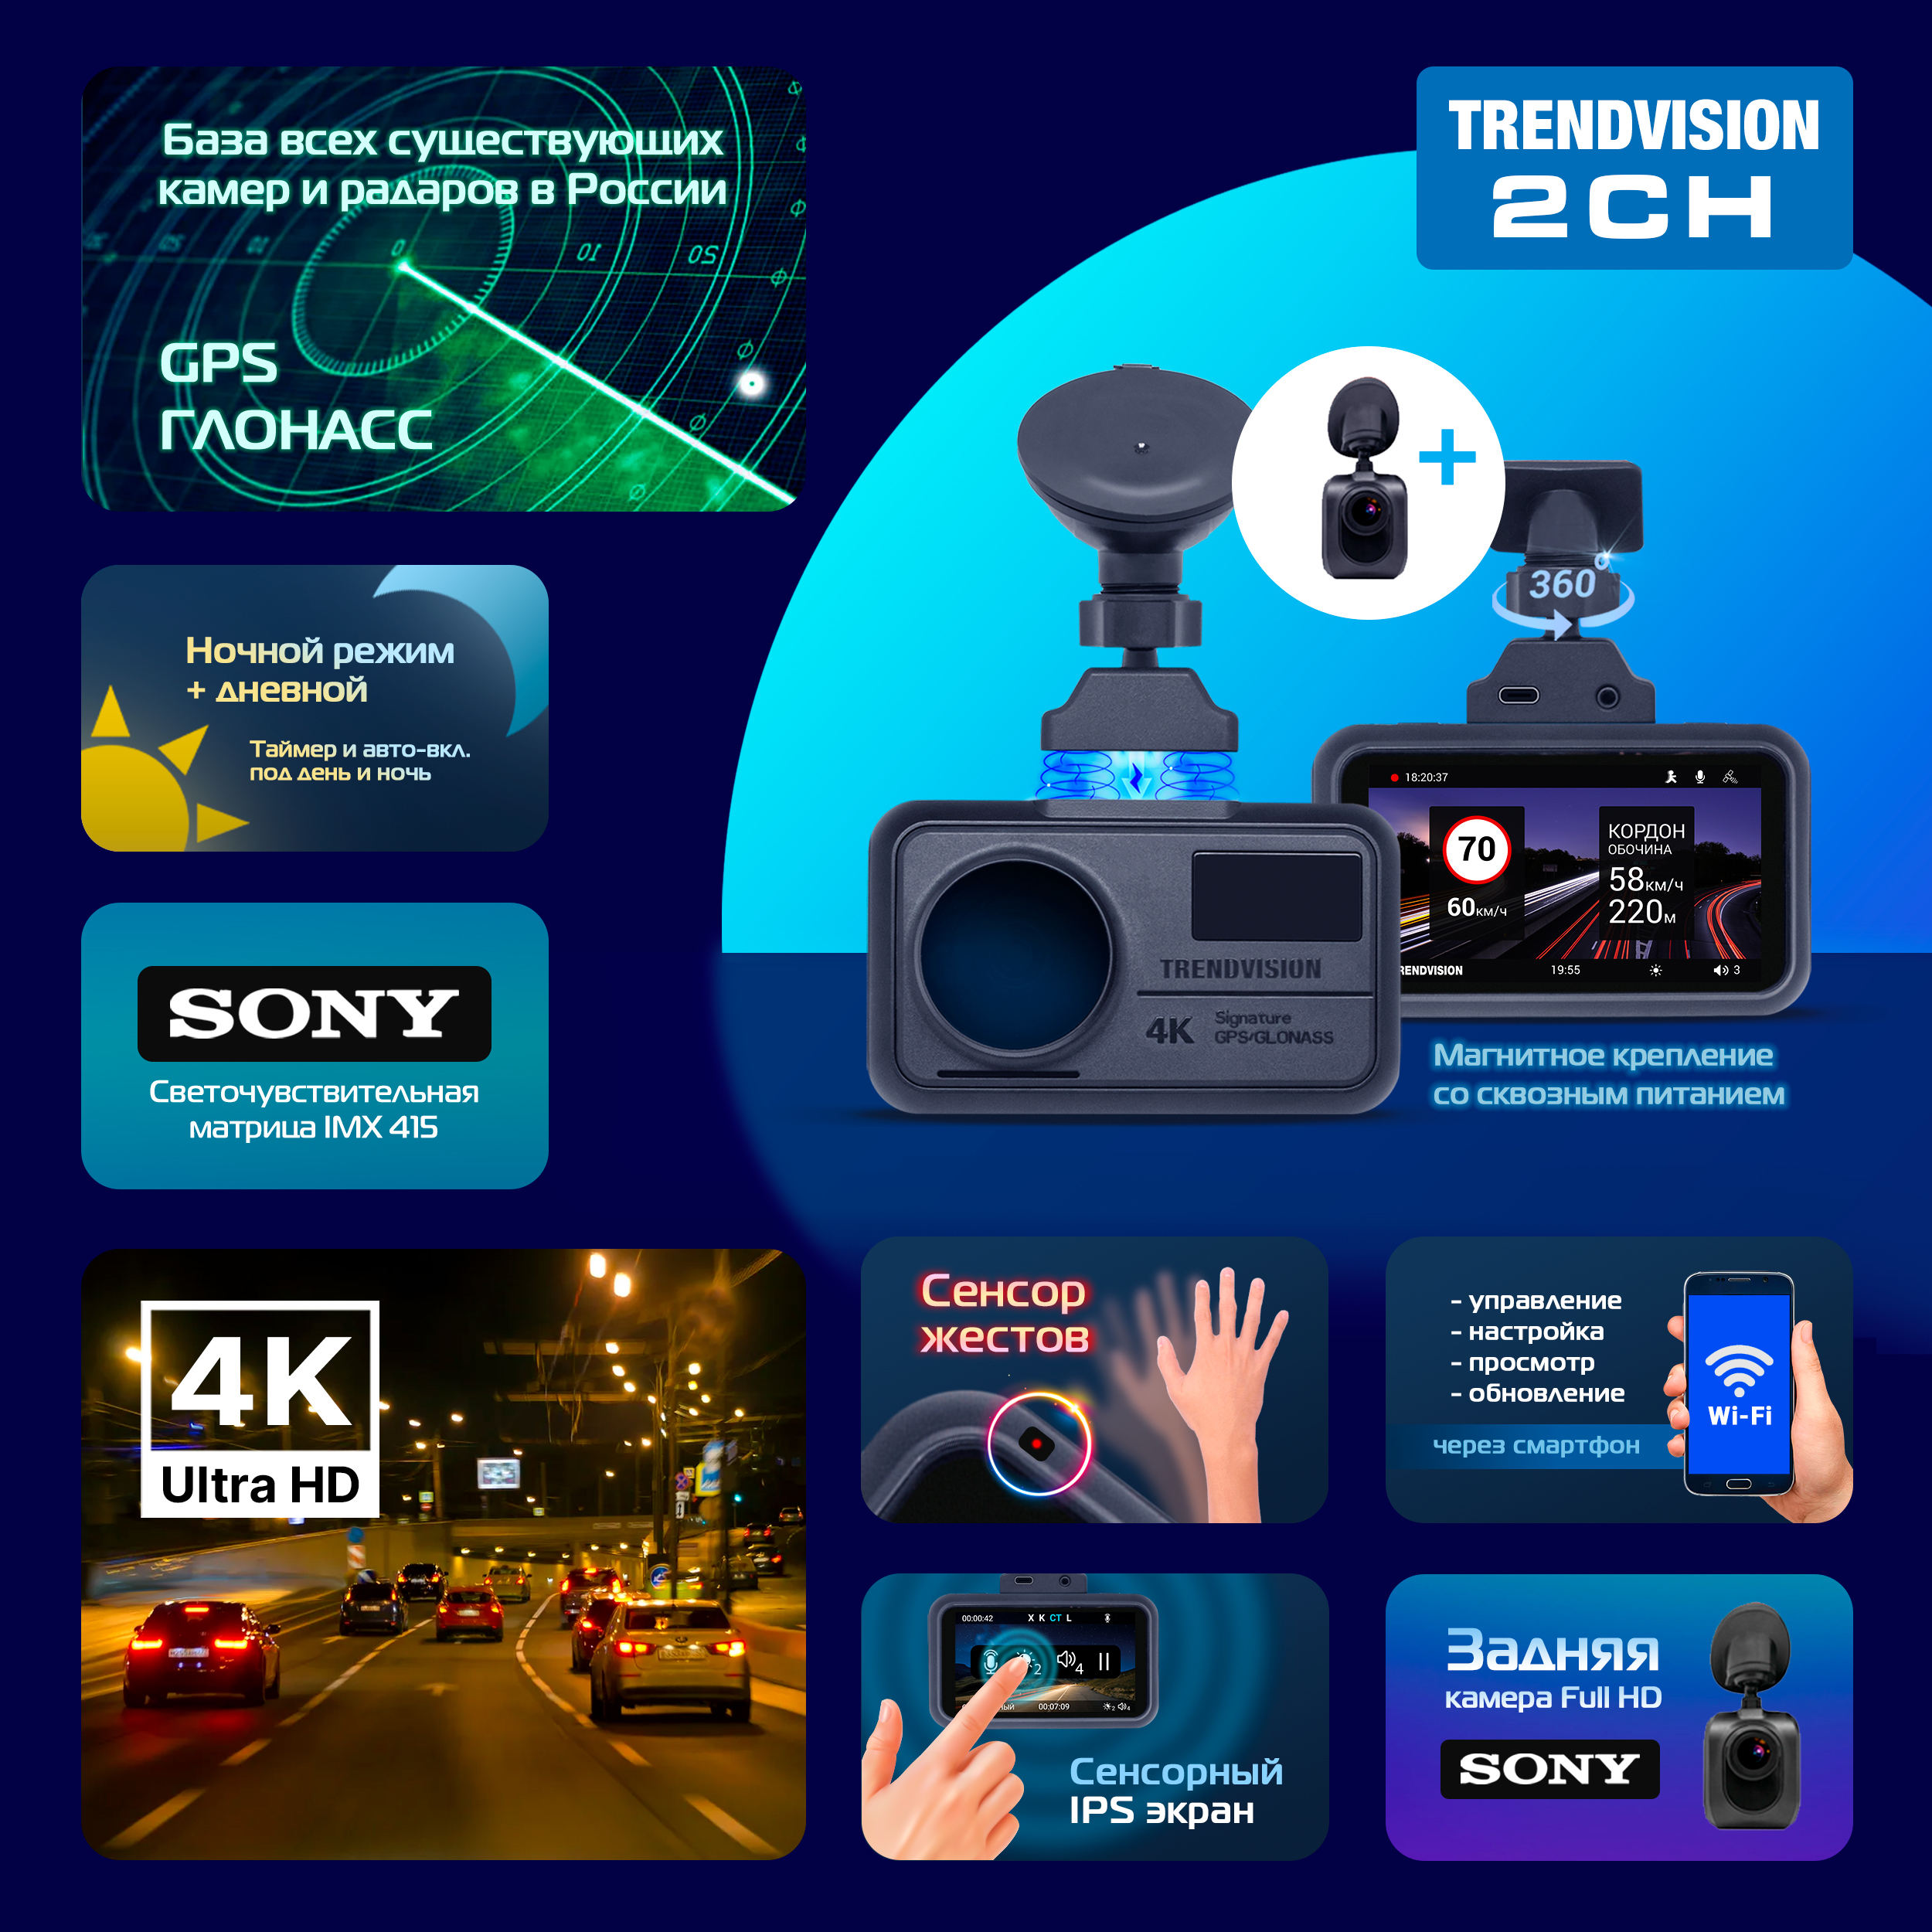 Видеорегистратор TrendVision 2CH - 4К (SONY), задняя камера, сенсоры, GPS, CPL, Wi-Fi